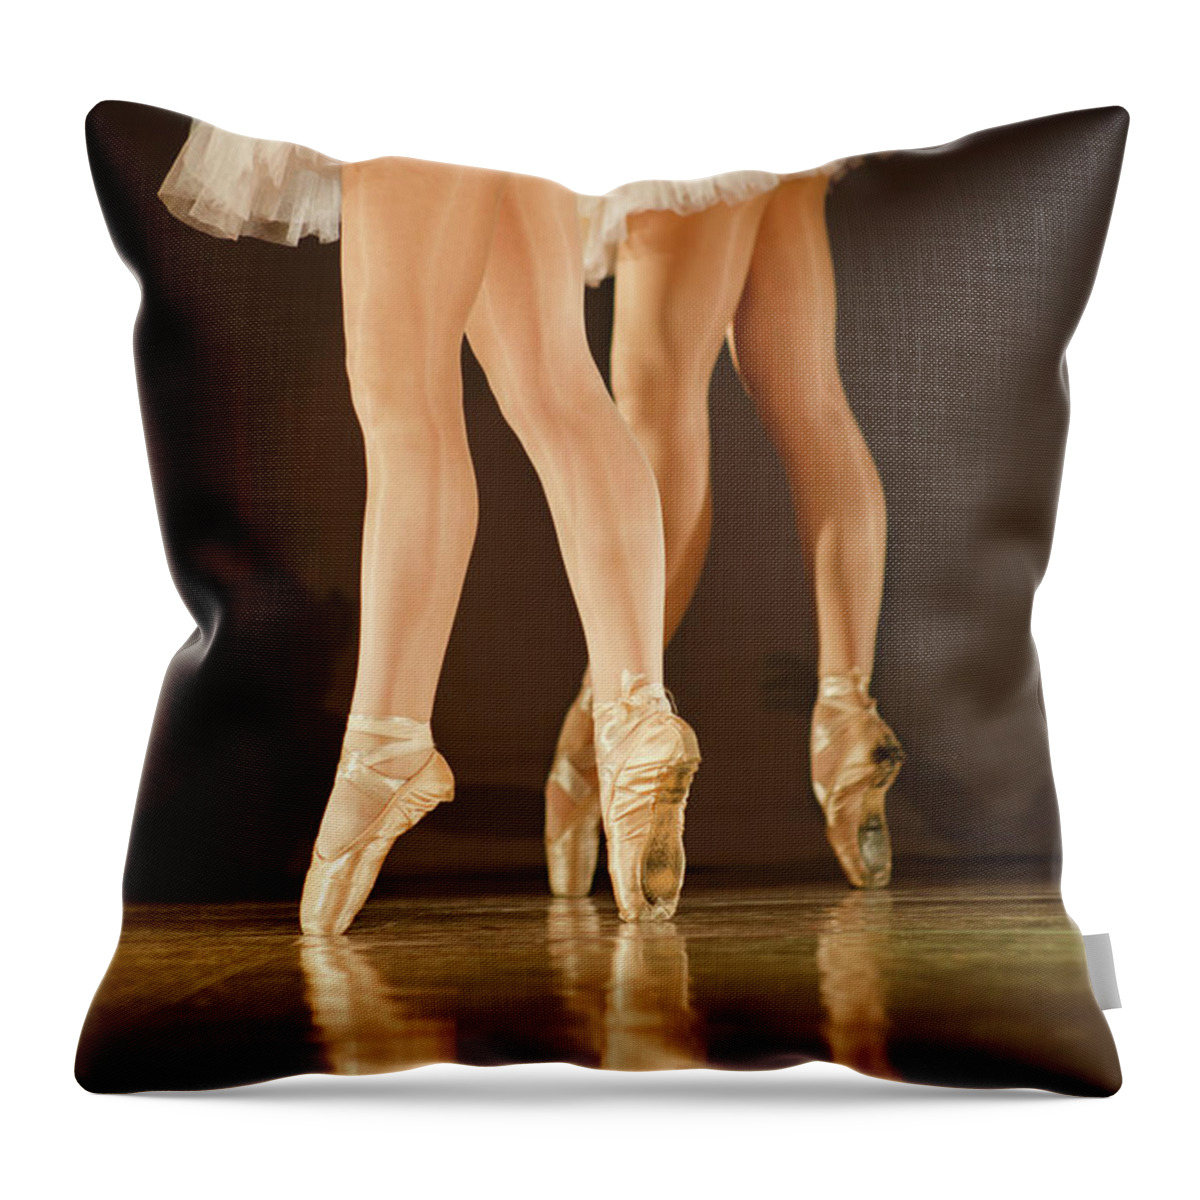 Ballet Dancer Throw Pillow featuring the photograph Legs Of Ballerinas - Balet Background by Art-4-art